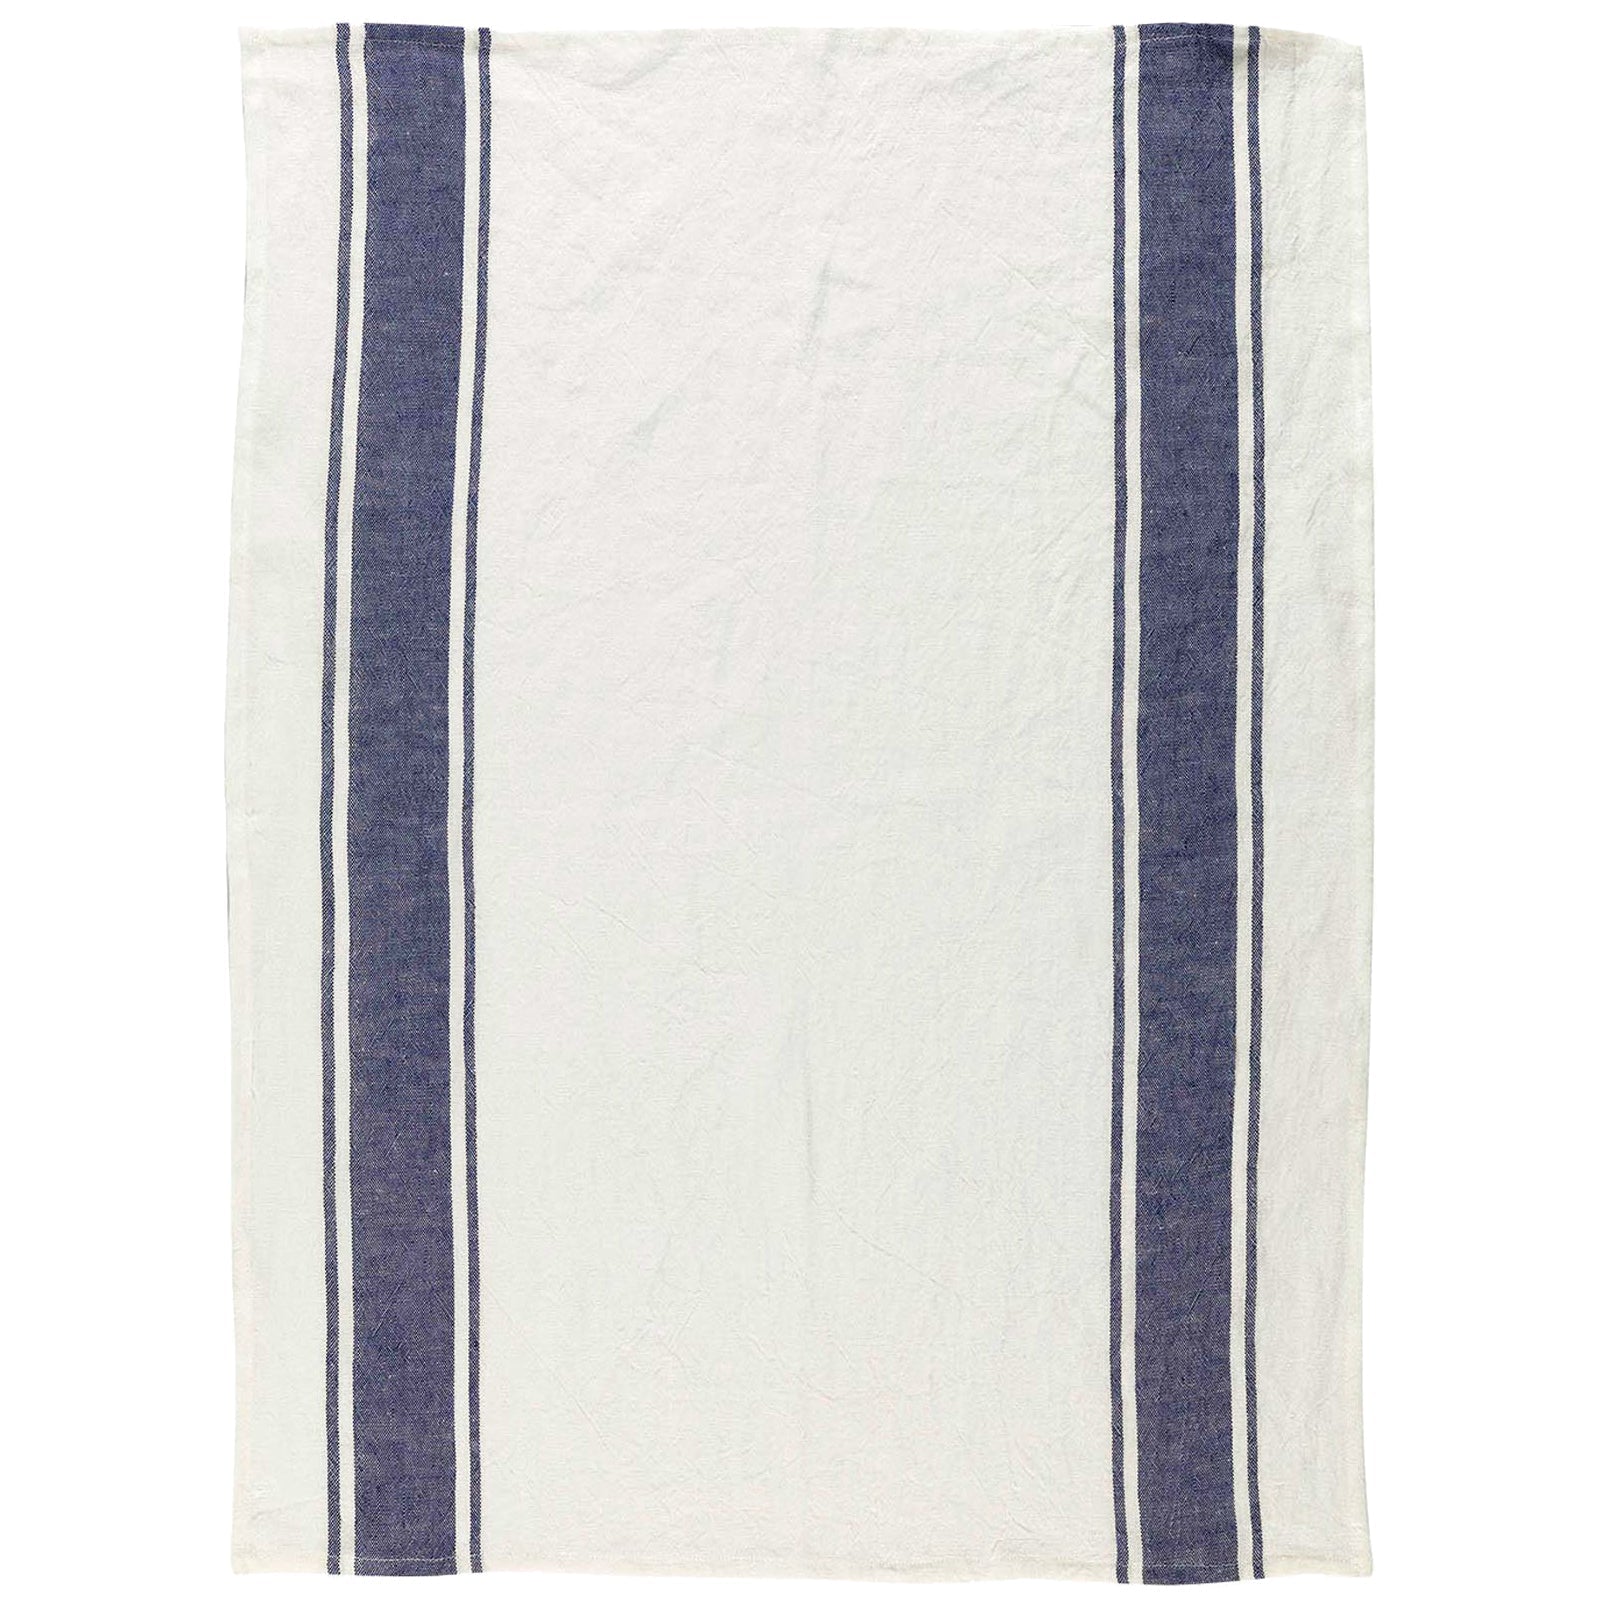 Kitchen Towel Set: 2 weeks — Blue Cottage Linens